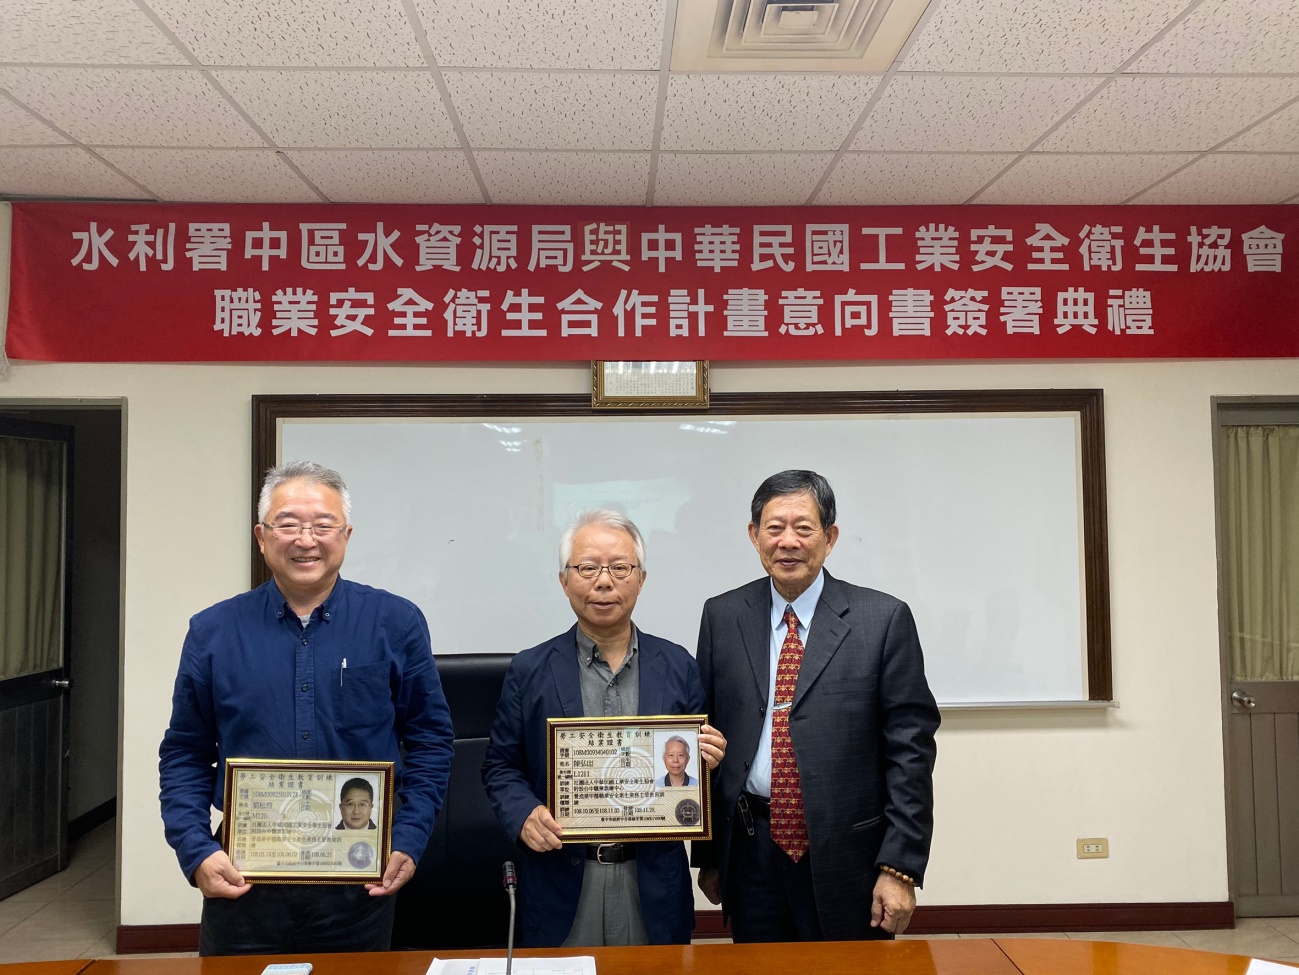 中華民國工業安全衛生協會藍理事長頒發證書